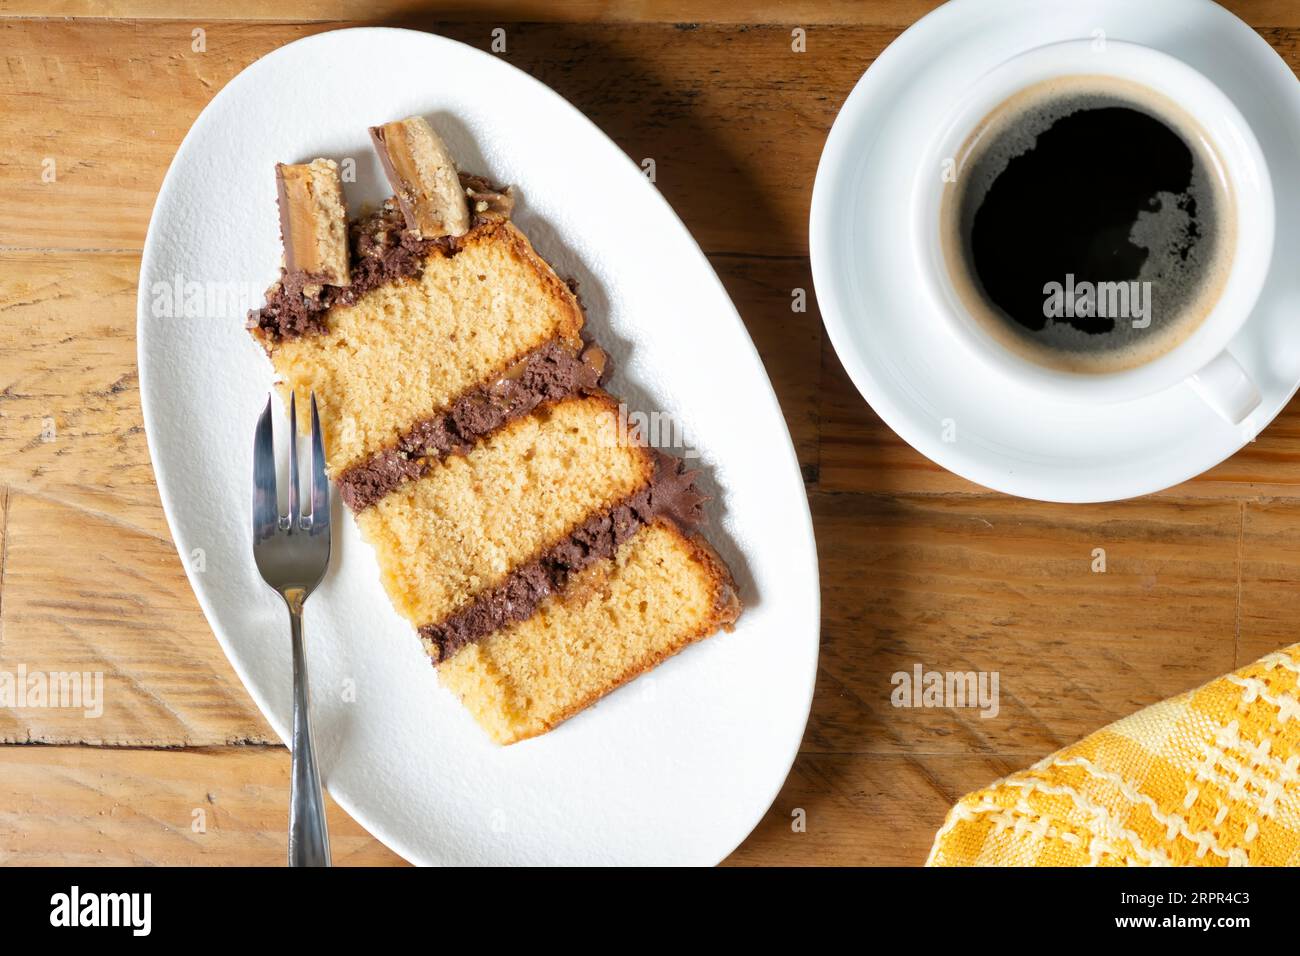 Ein Stück oder eine Portion frisch zubereiteter Millionäre-Biskuitkuchen, serviert auf einem Teller mit einer Konditorgabel und einer frischen Tasse schwarzen Kaffee. Stockfoto